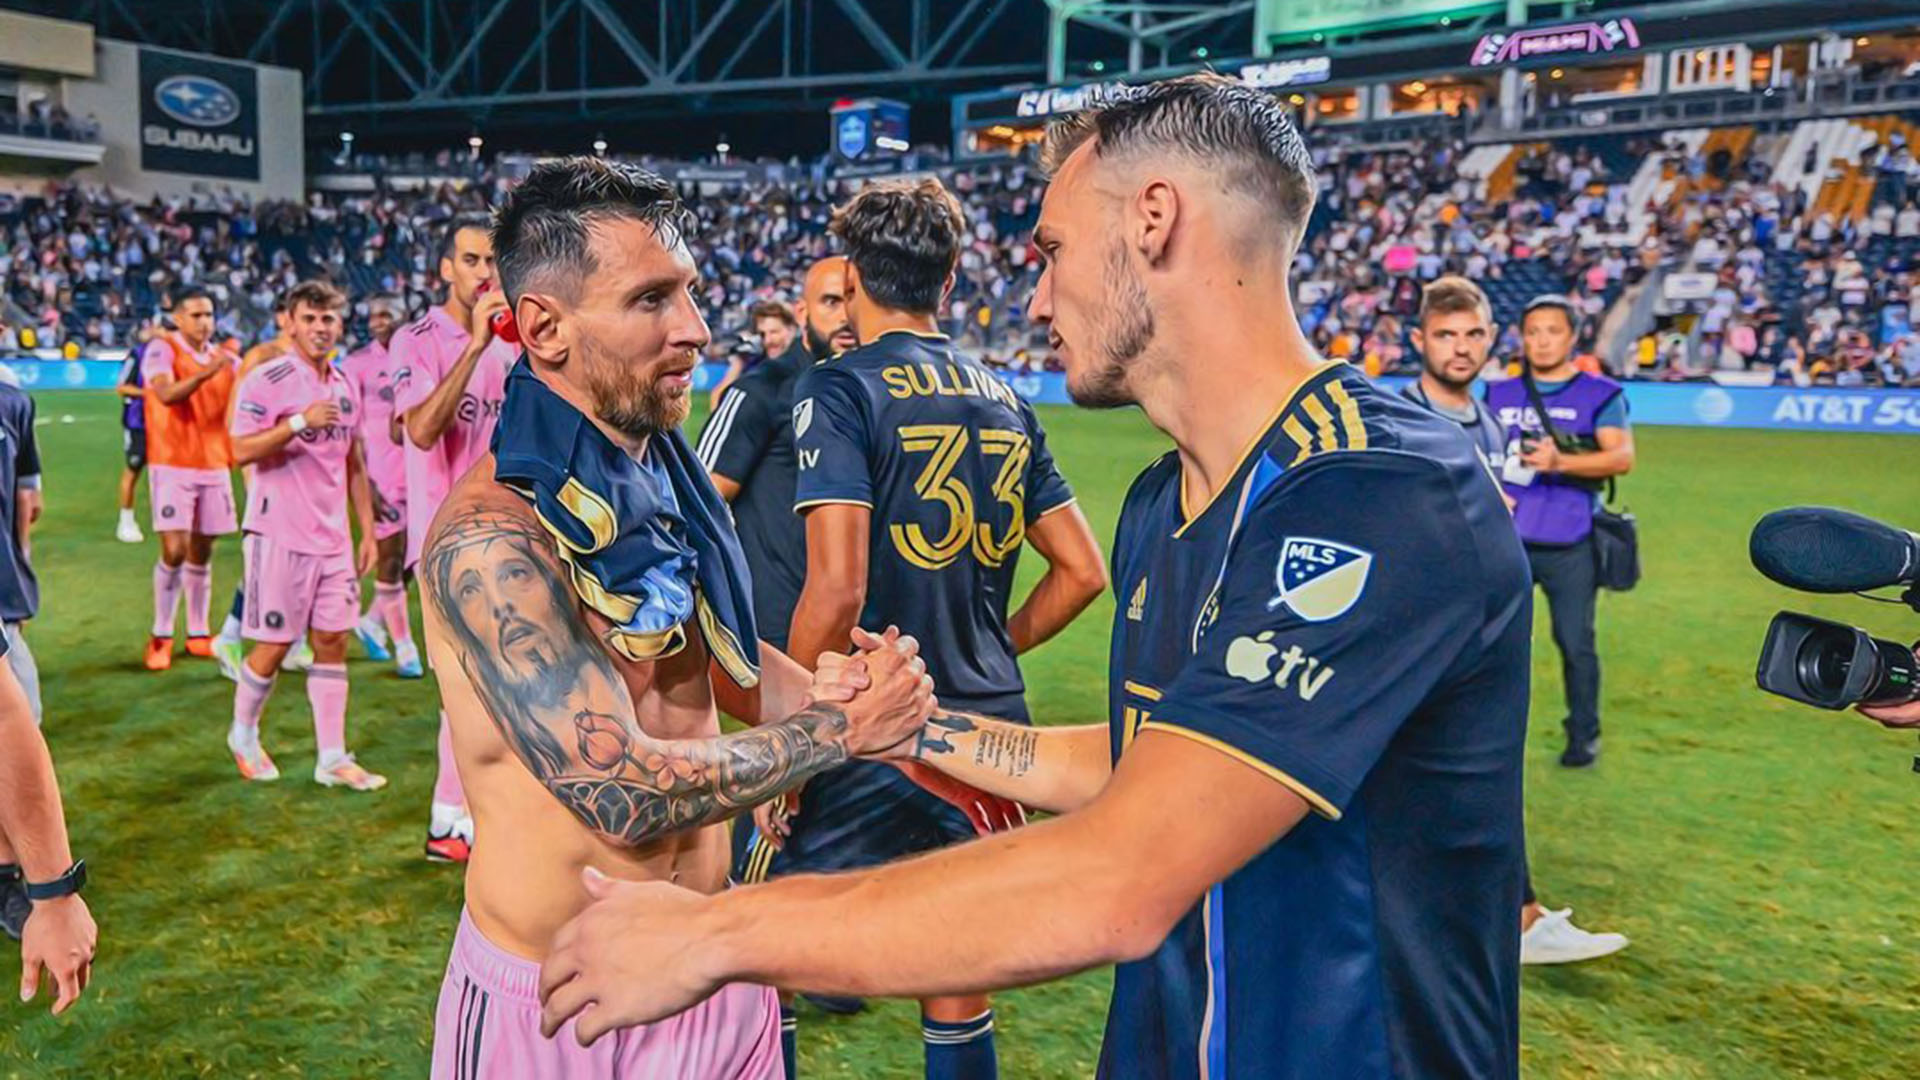 Tras el partido ante el Inter de Miami, Gazdag subió una foto con Messi que se volvió viral. Dijo que había conocido a su héroe y su pareja comentó la publicación: “Nunca me miró así”.